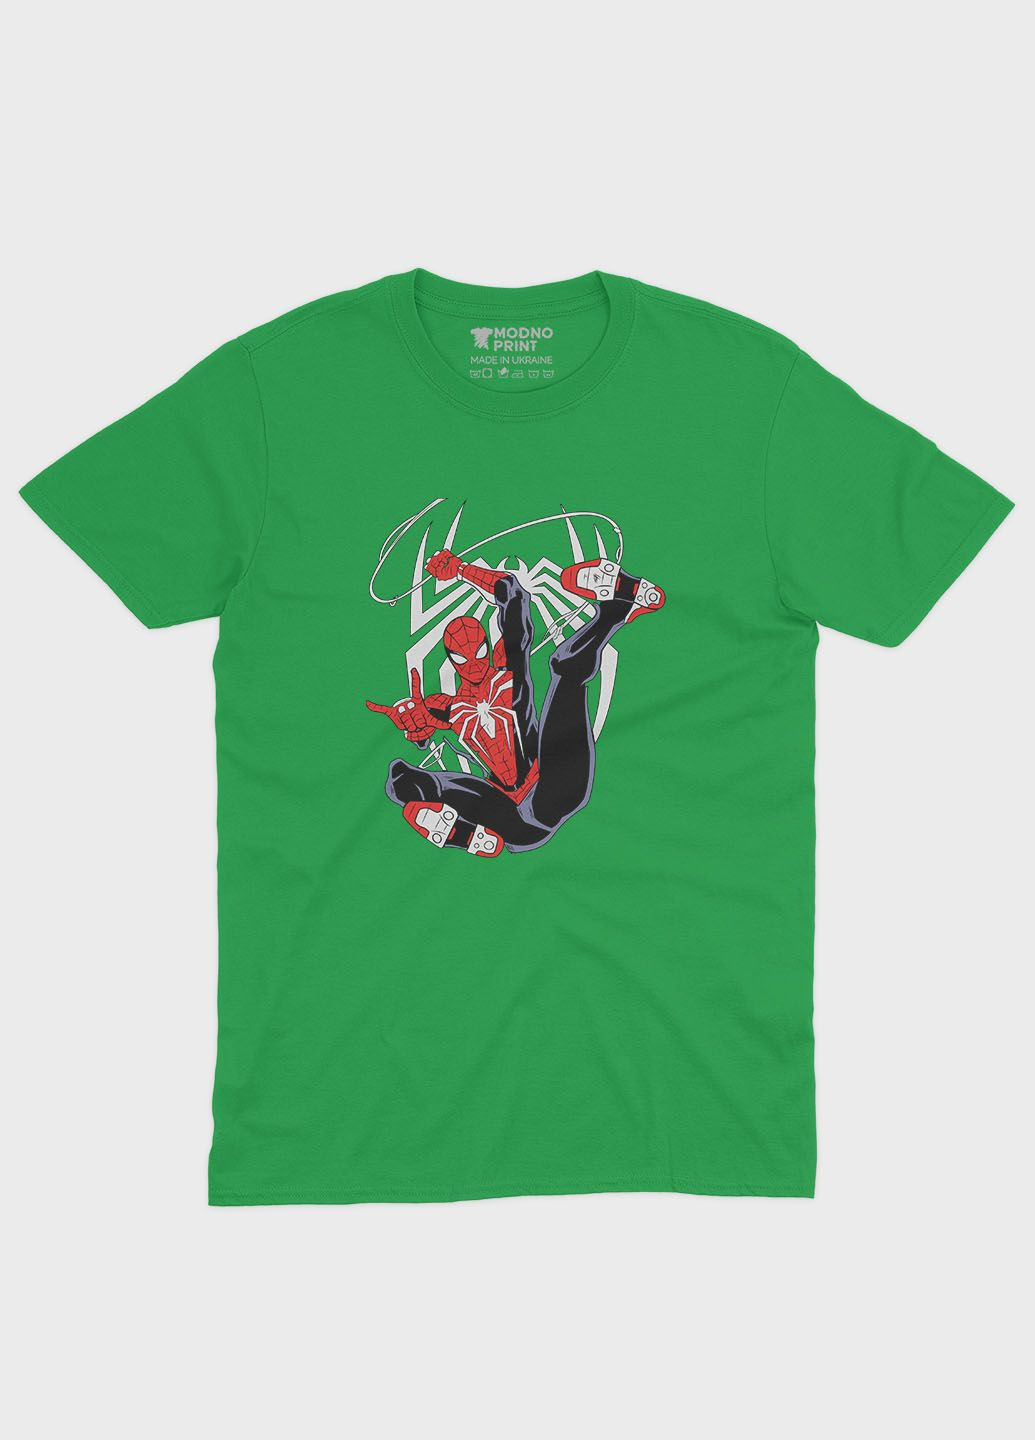 Зеленая демисезонная футболка для мальчика с принтом супергероя - человек-паук (ts001-1-keg-006-014-025-b) Modno